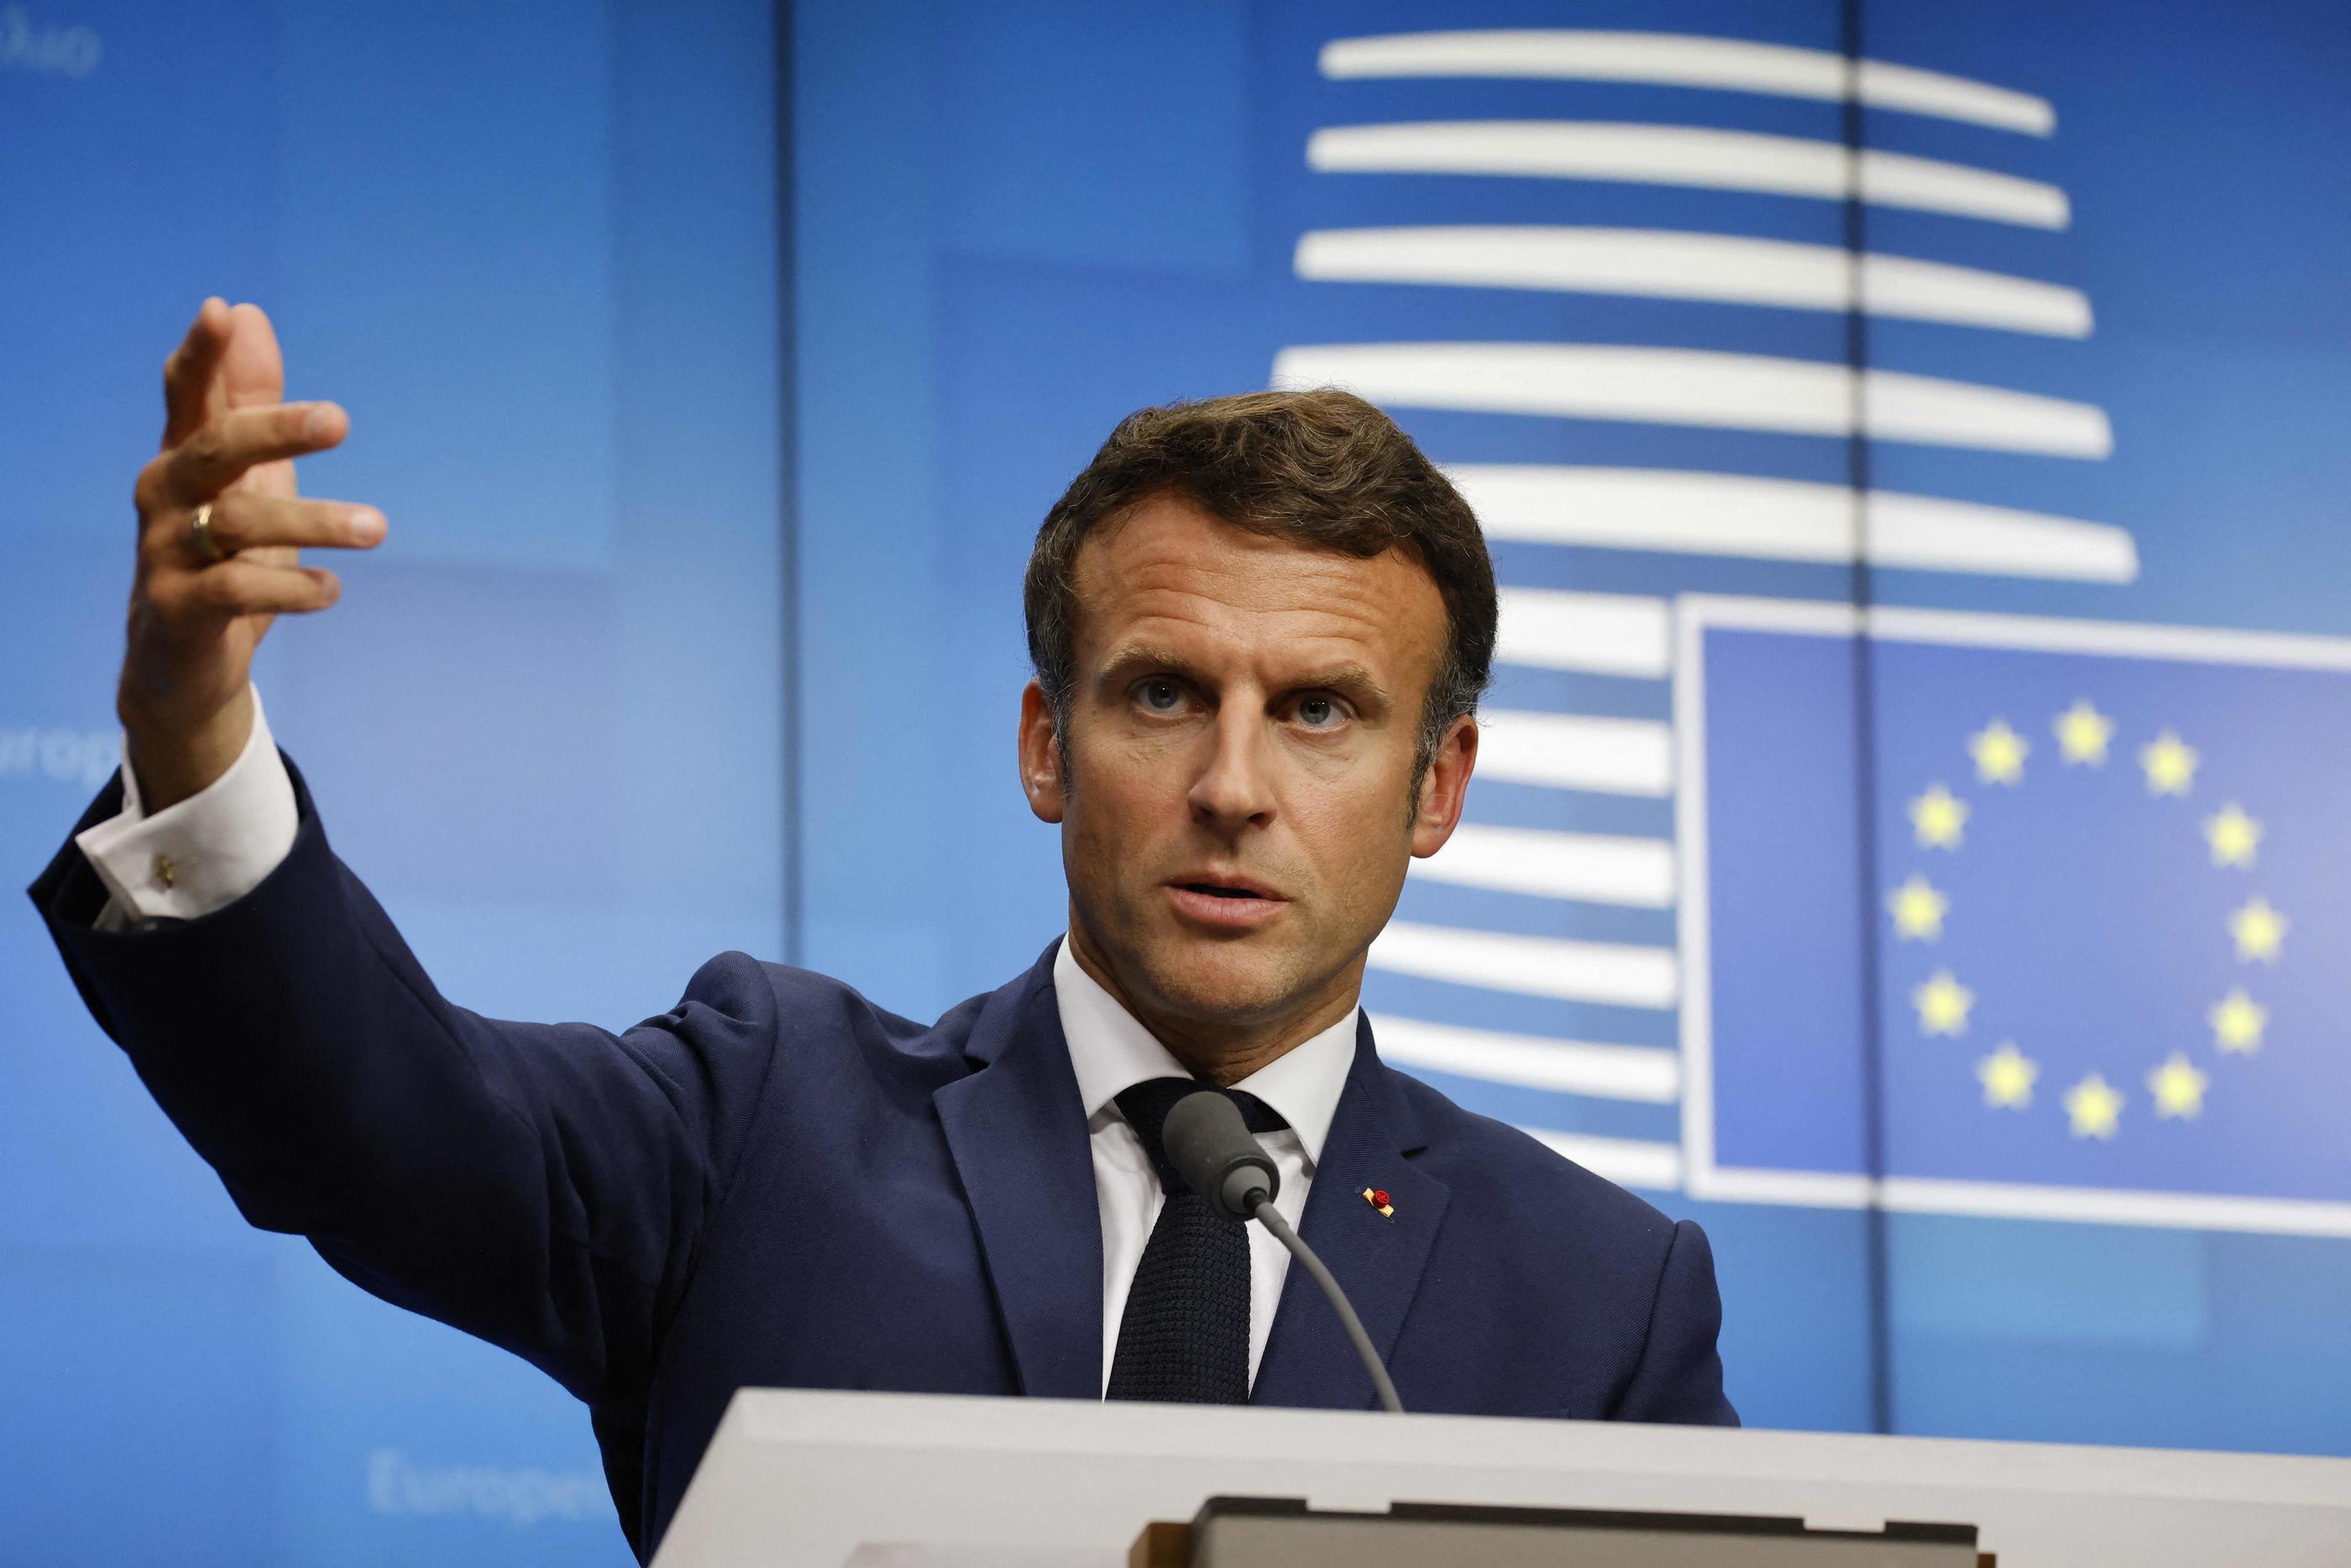 Le chef de l’État français s'est appliqué à afficher sa sérénité devant ses partenaires européens réunis à Bruxelles, ce 24 juin. AFP/Ludovic Marin